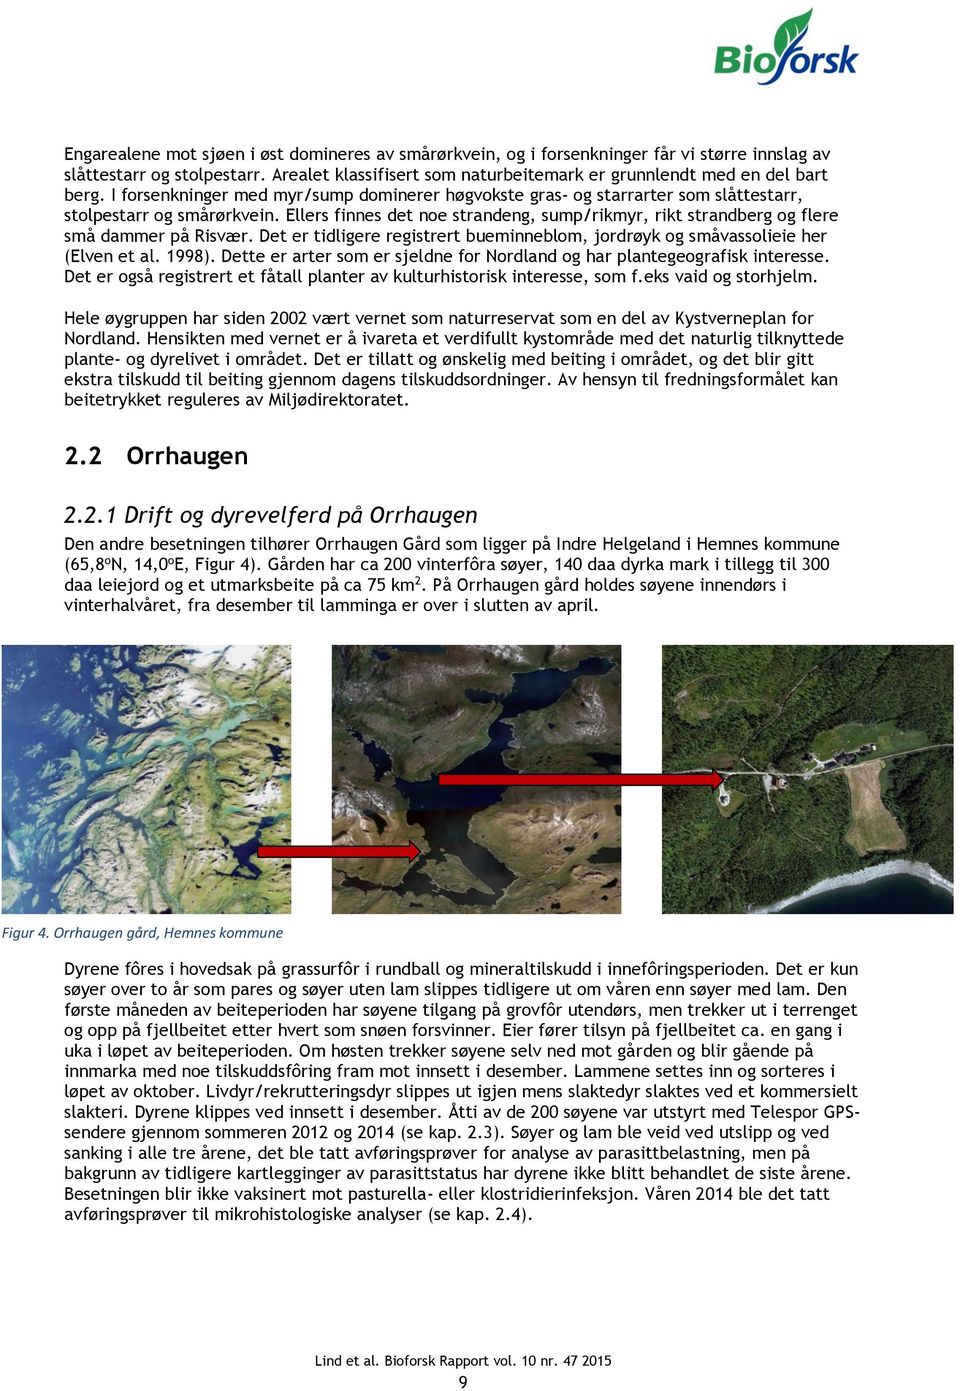 Ellers finnes det noe strandeng, sump/rikmyr, rikt strandberg og flere små dammer på Risvær. Det er tidligere registrert bueminneblom, jordrøyk og småvassolieie her (Elven et al. 1998).